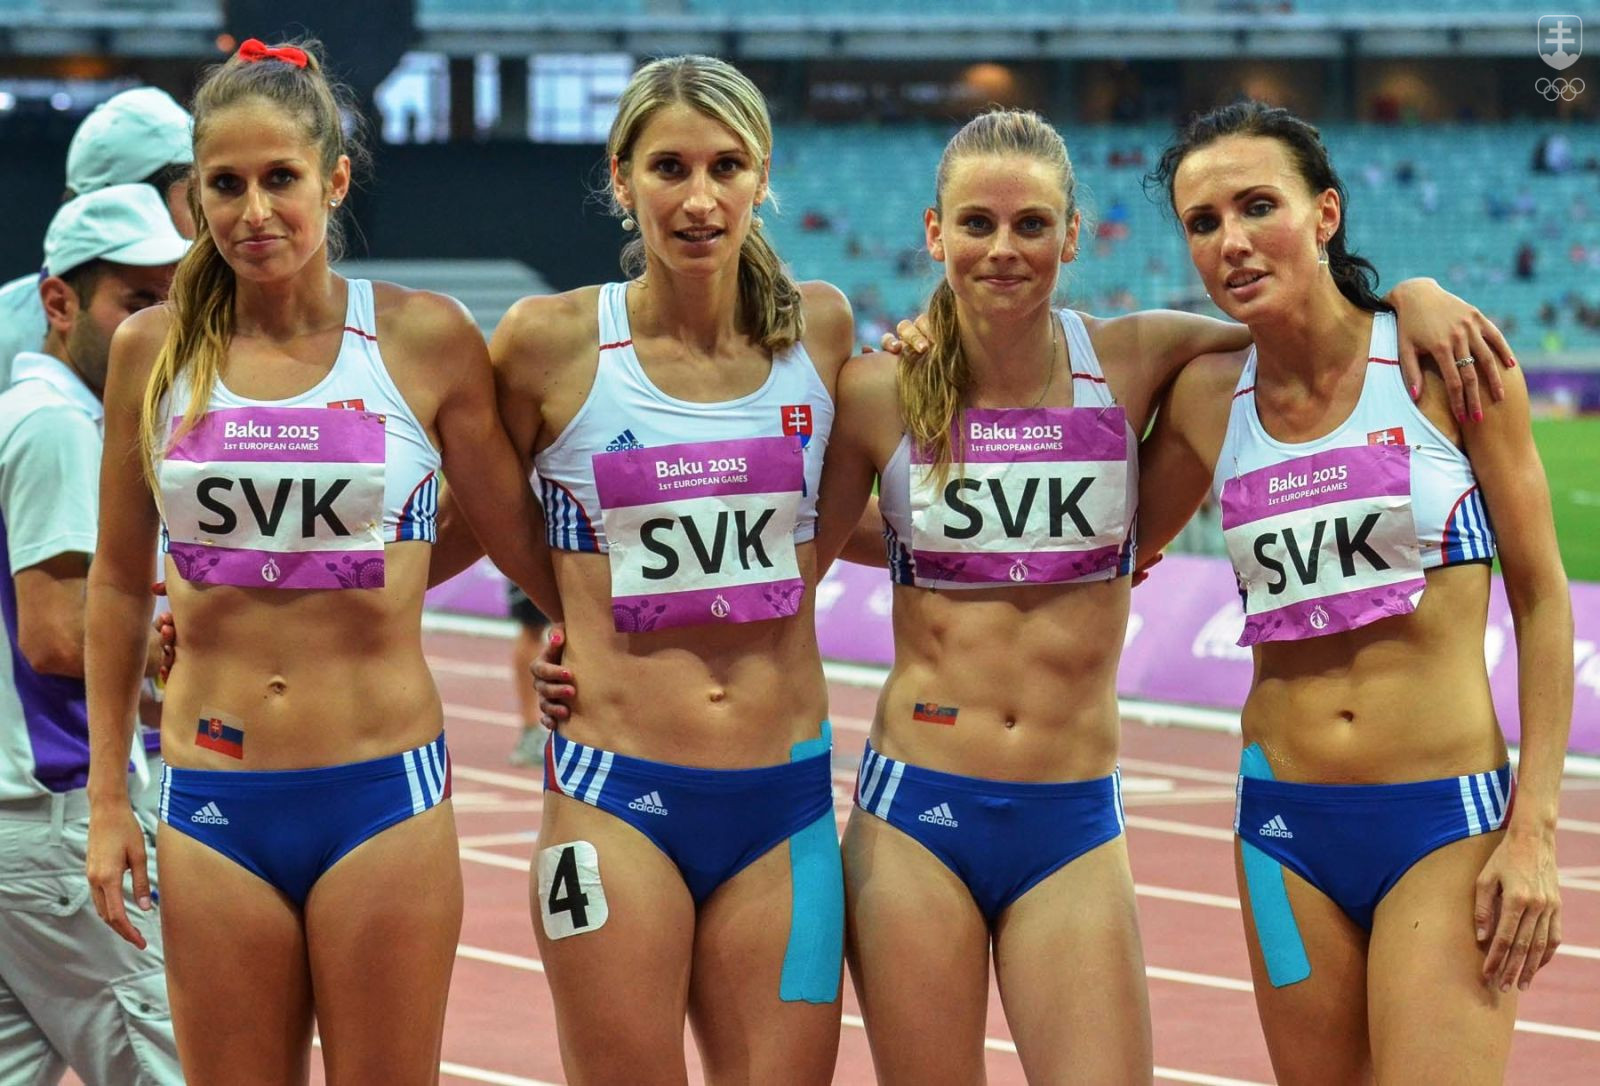 Členky víťaznej slovenskej štafety na 4x400 m (zľava) Štuková, Šalgovičová, Bezeková a Putalová. FOTO: JÁN SÚKUP, SOV